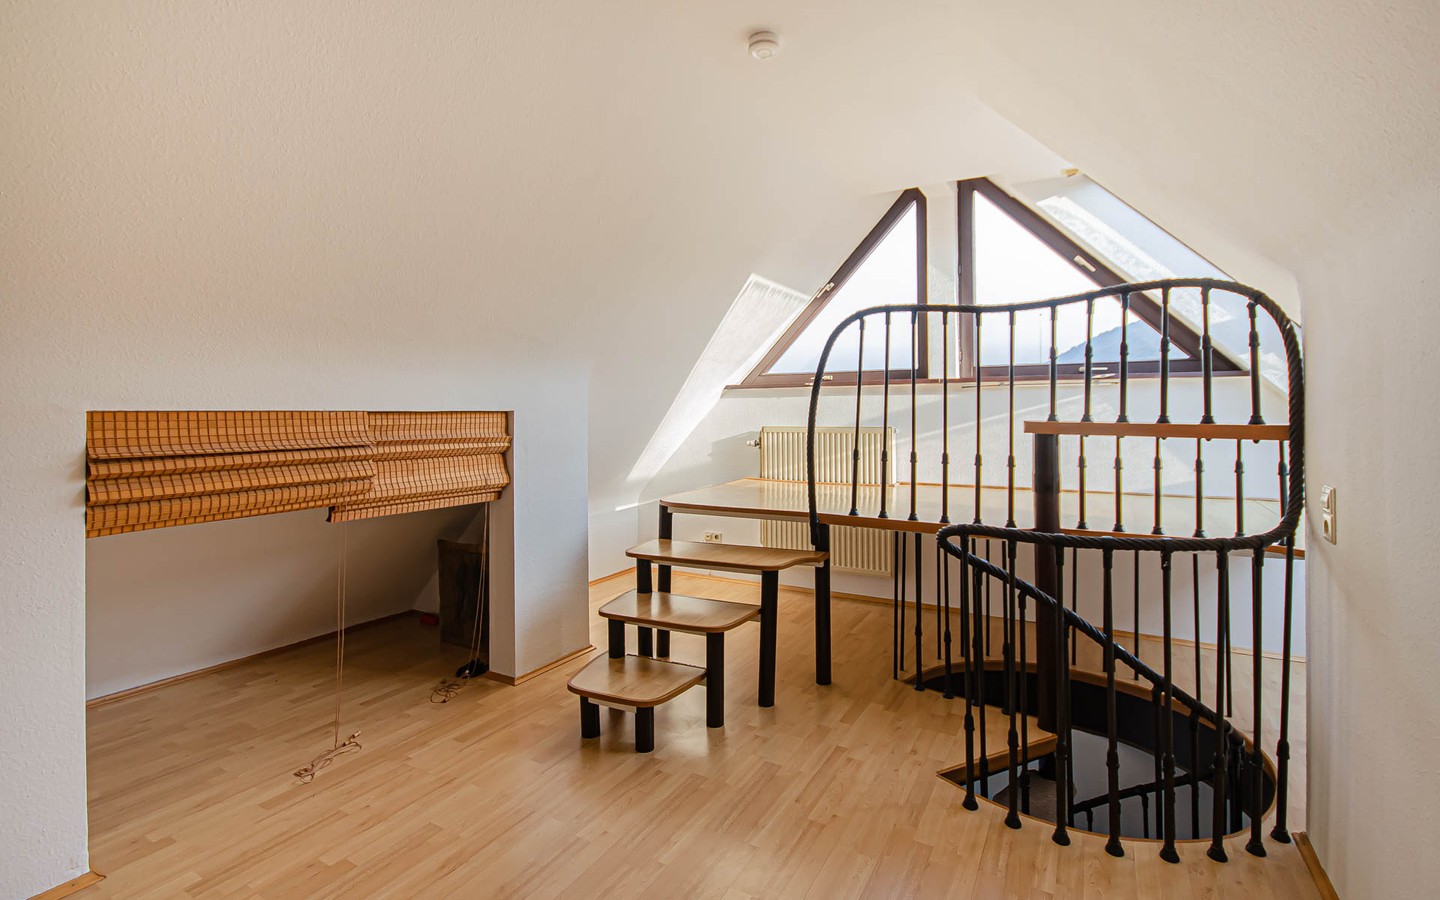 Studio - Offene und helle Maisonettewohnung in zentraler Lage in Heidelberg-Rohrbach